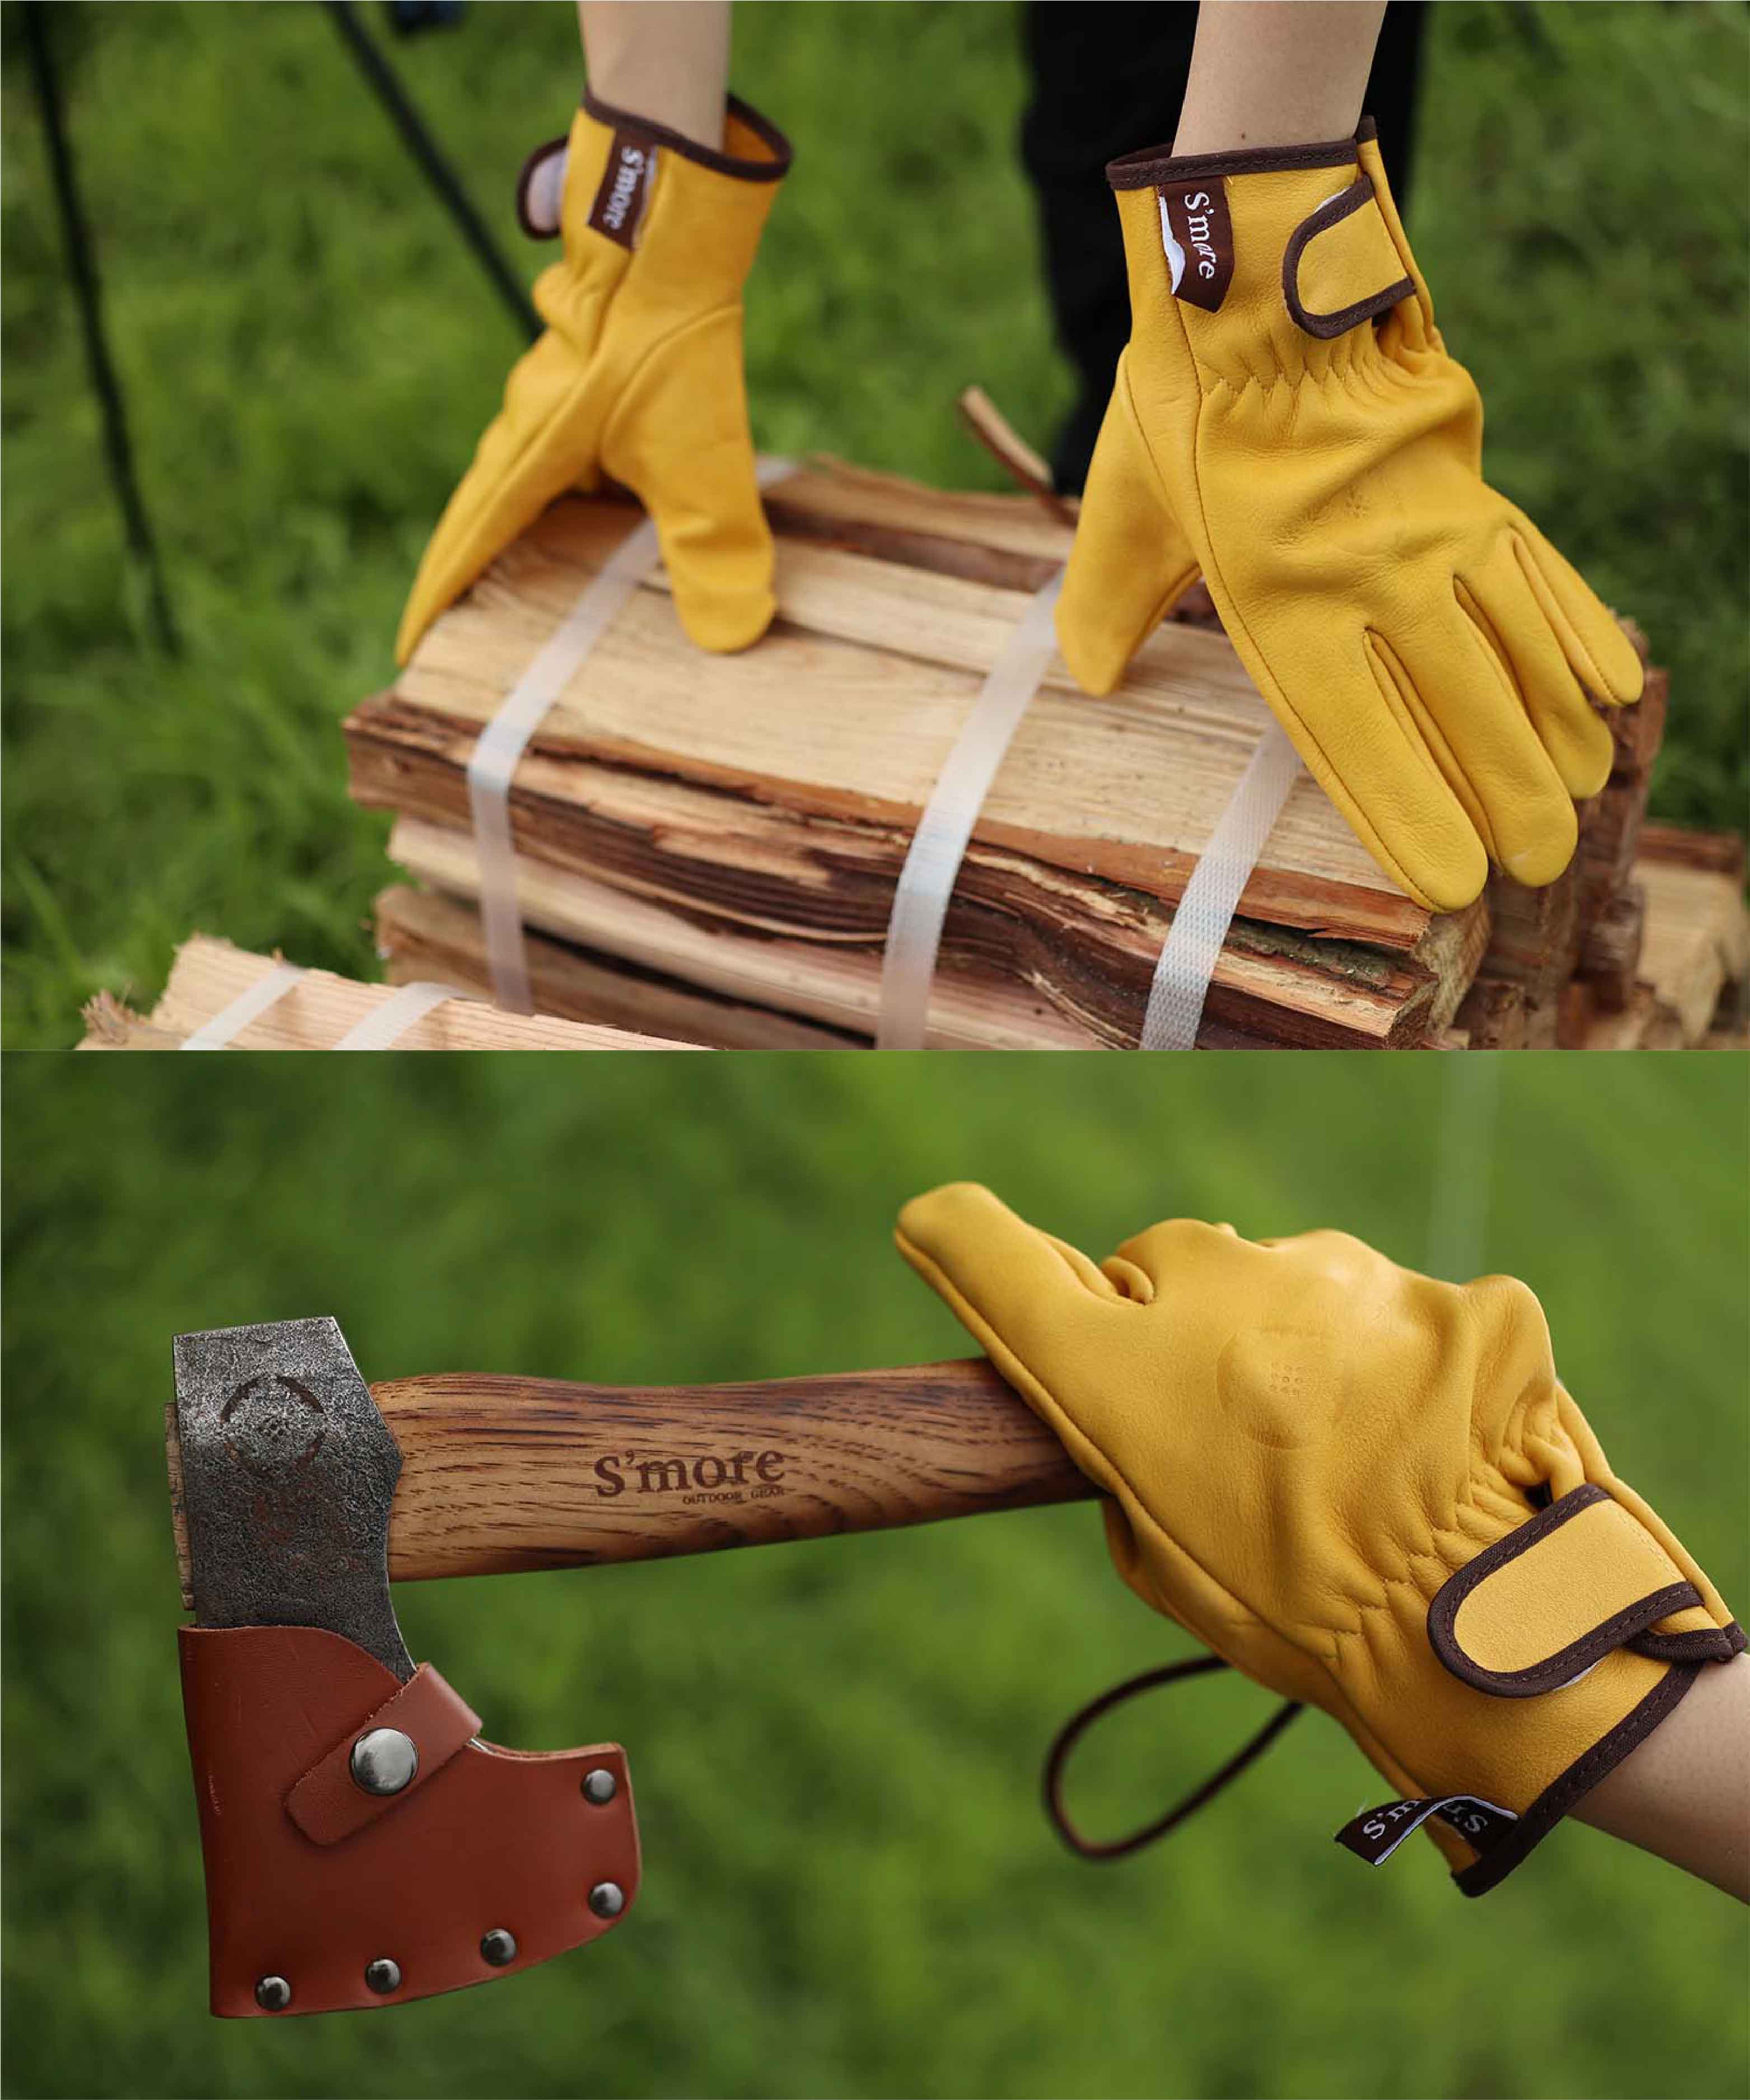 スモア Leather gloves